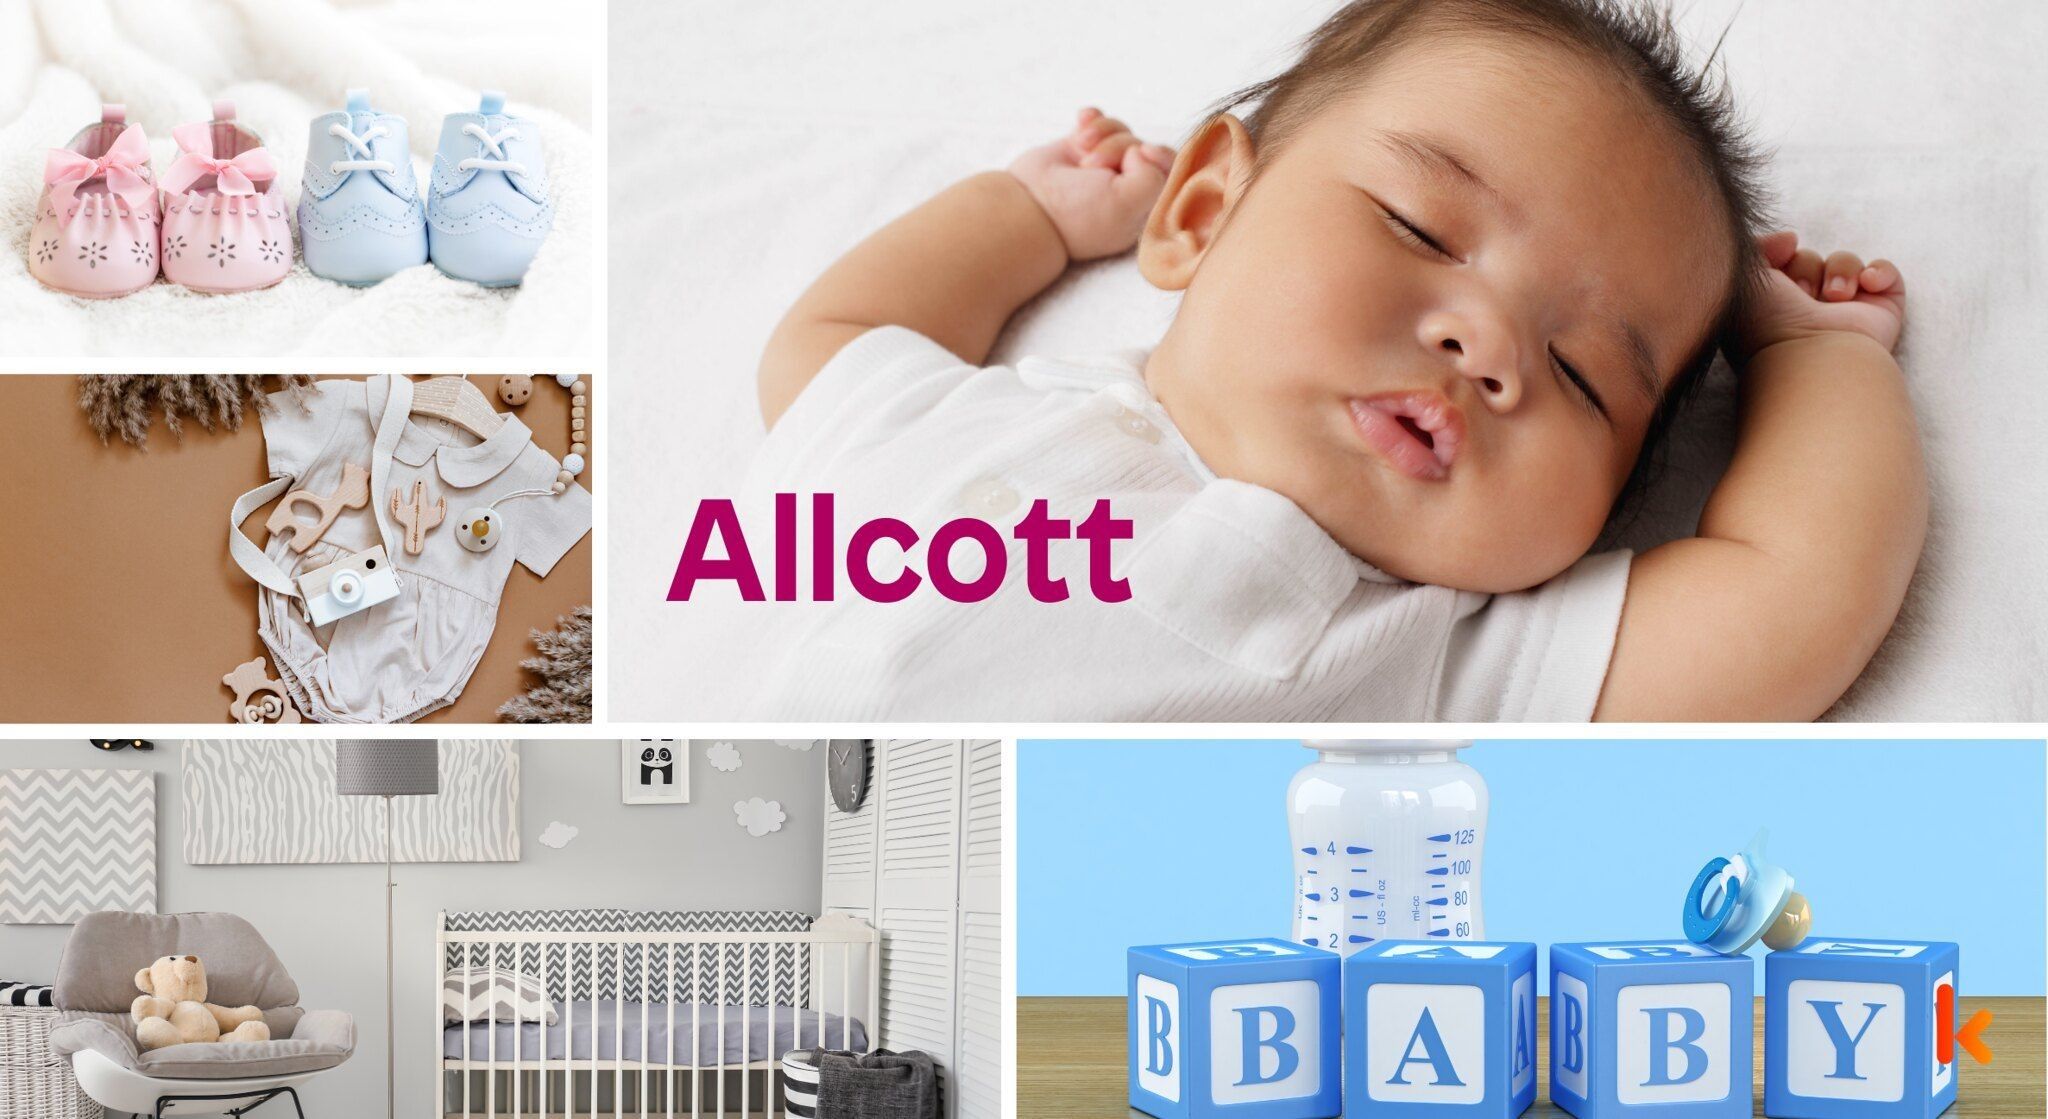 Meaning of the name Allcott